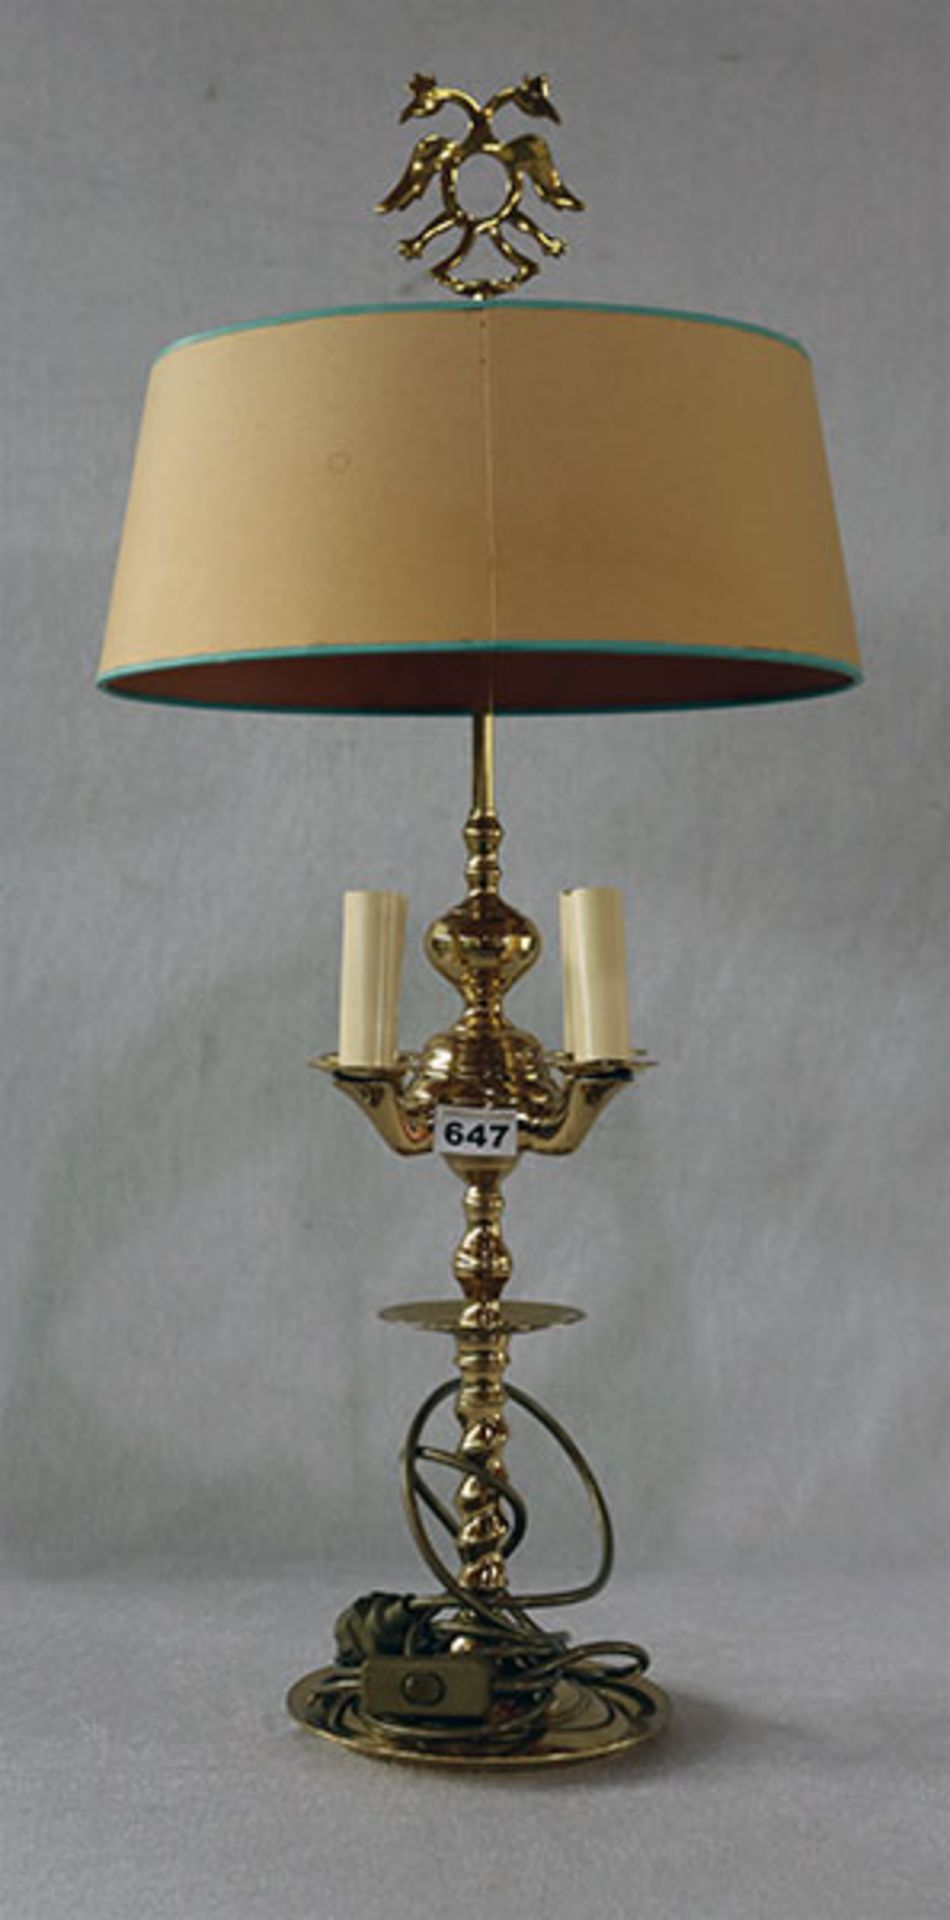 Paar Tischlampen mit Messingfuß, mit je 4 Leuchten, verschiedenfarbige Lampenschirme, Funktion nicht